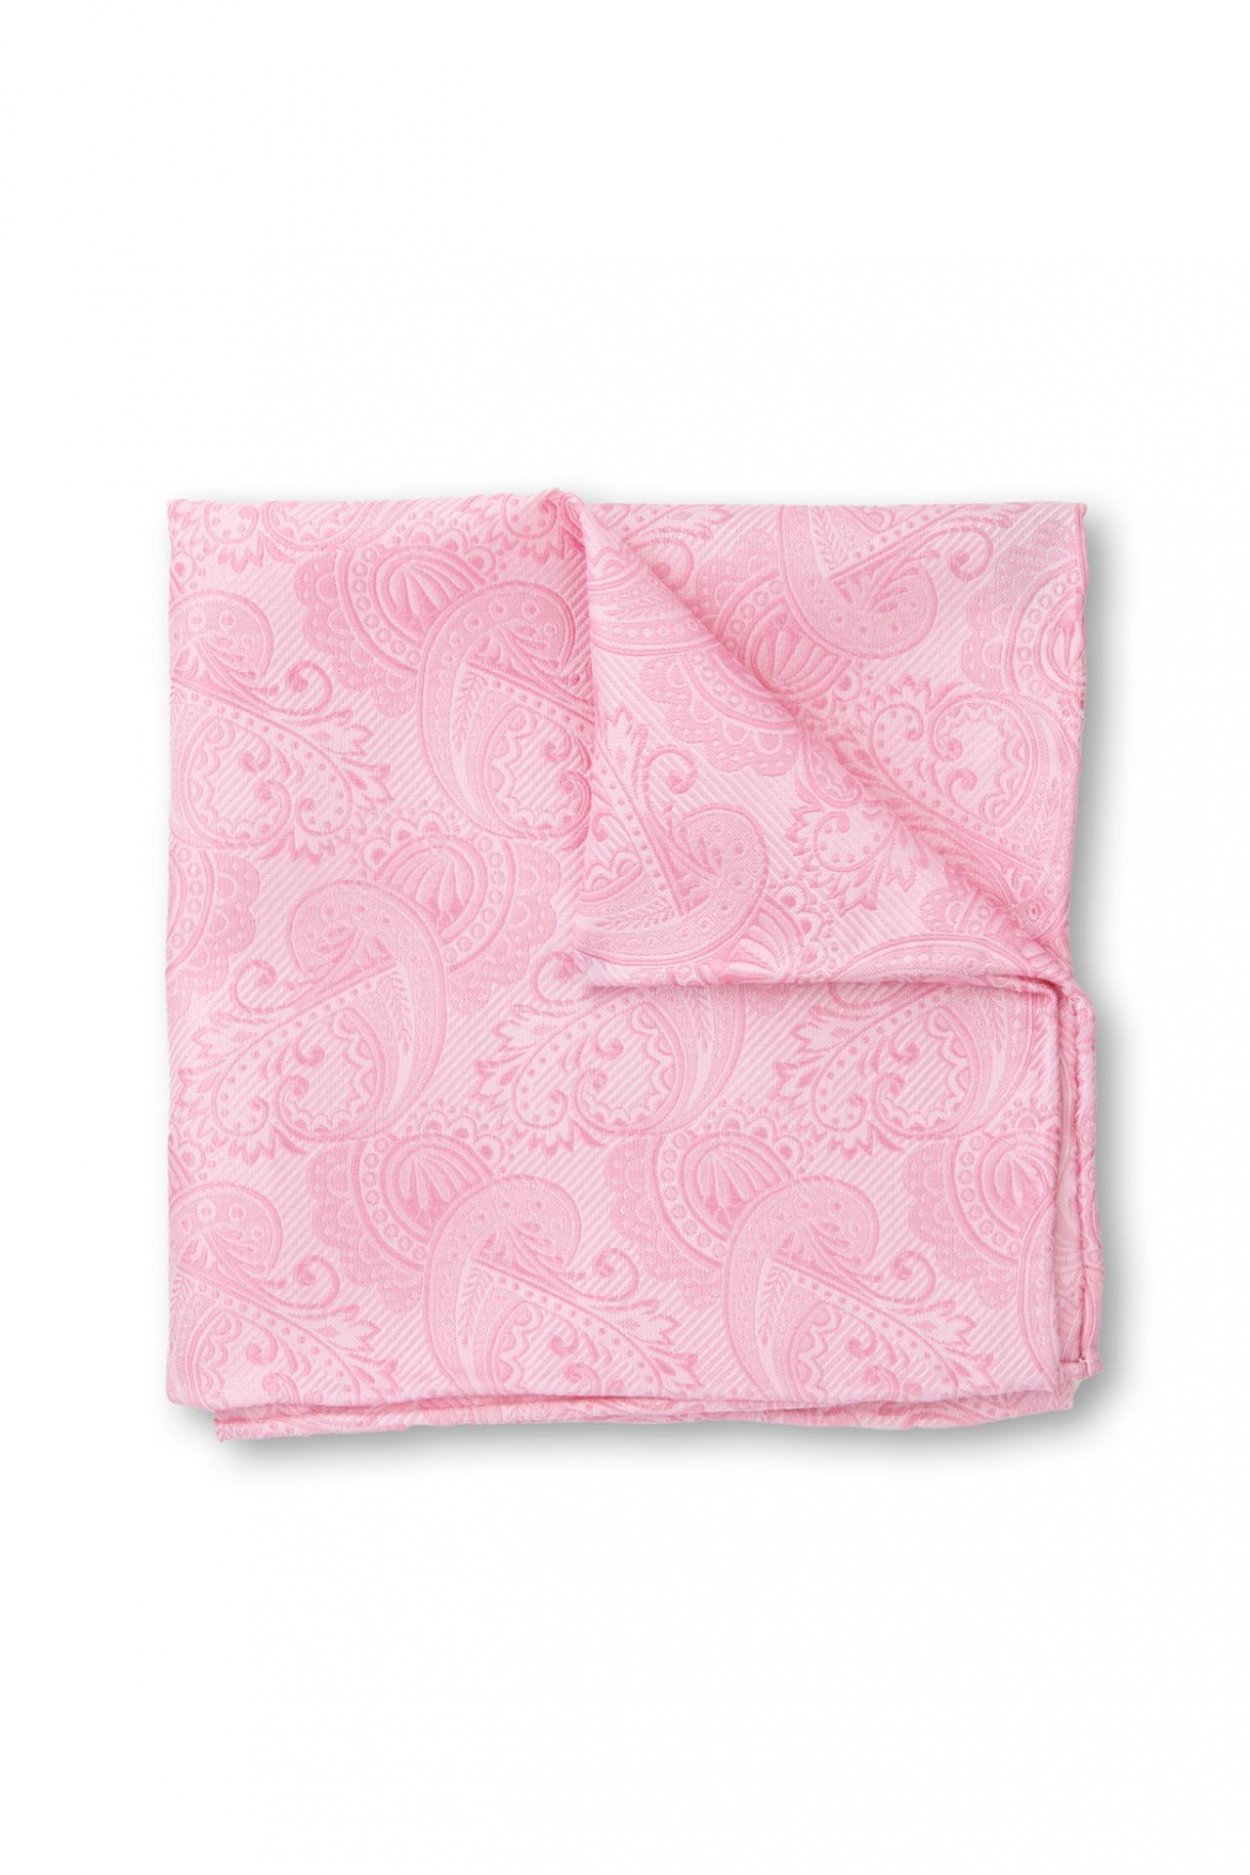 Růžový hedvábný kapesníček s jemným vzorem